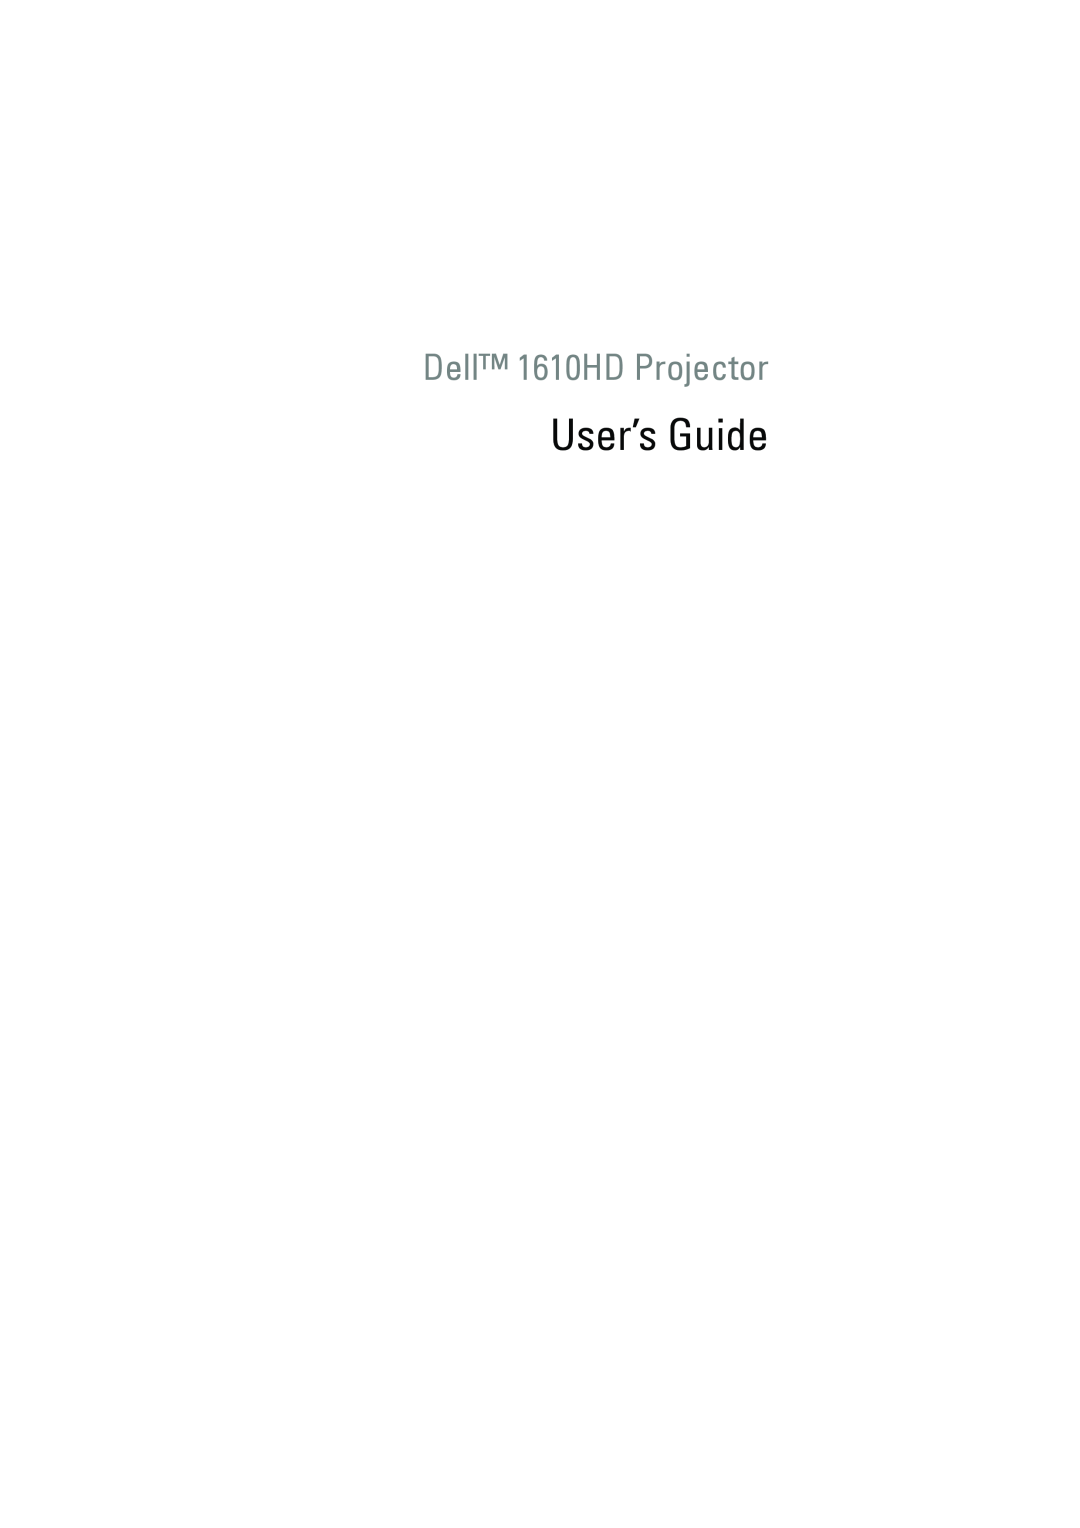 Dell manual User’s Guide, Dell 1610HD Projector 